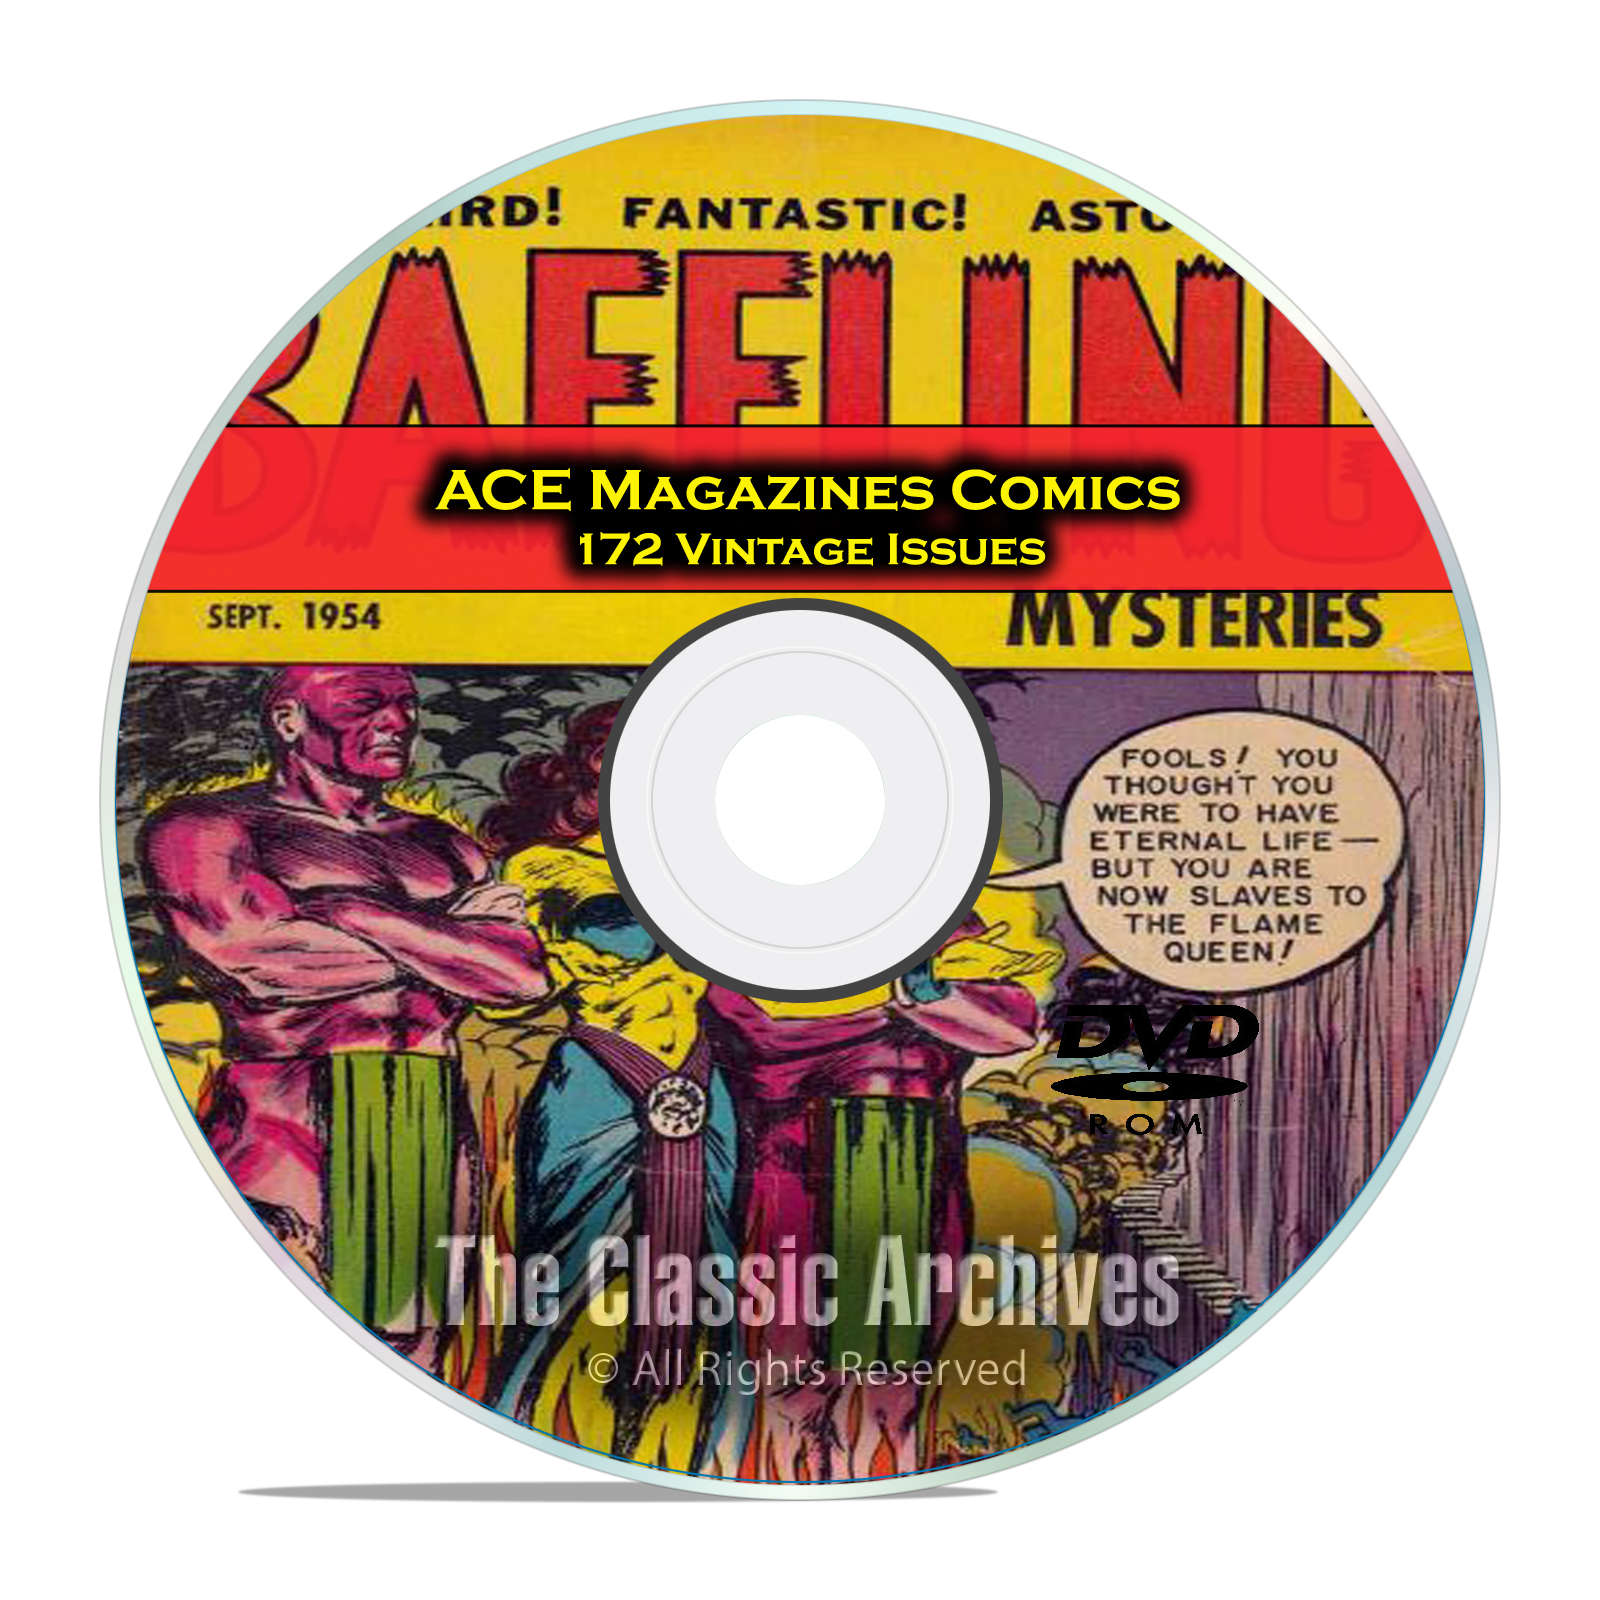 Baffling Mysteries, Beyond Lightning Comics 172 Issue Golden Age Comics DVD